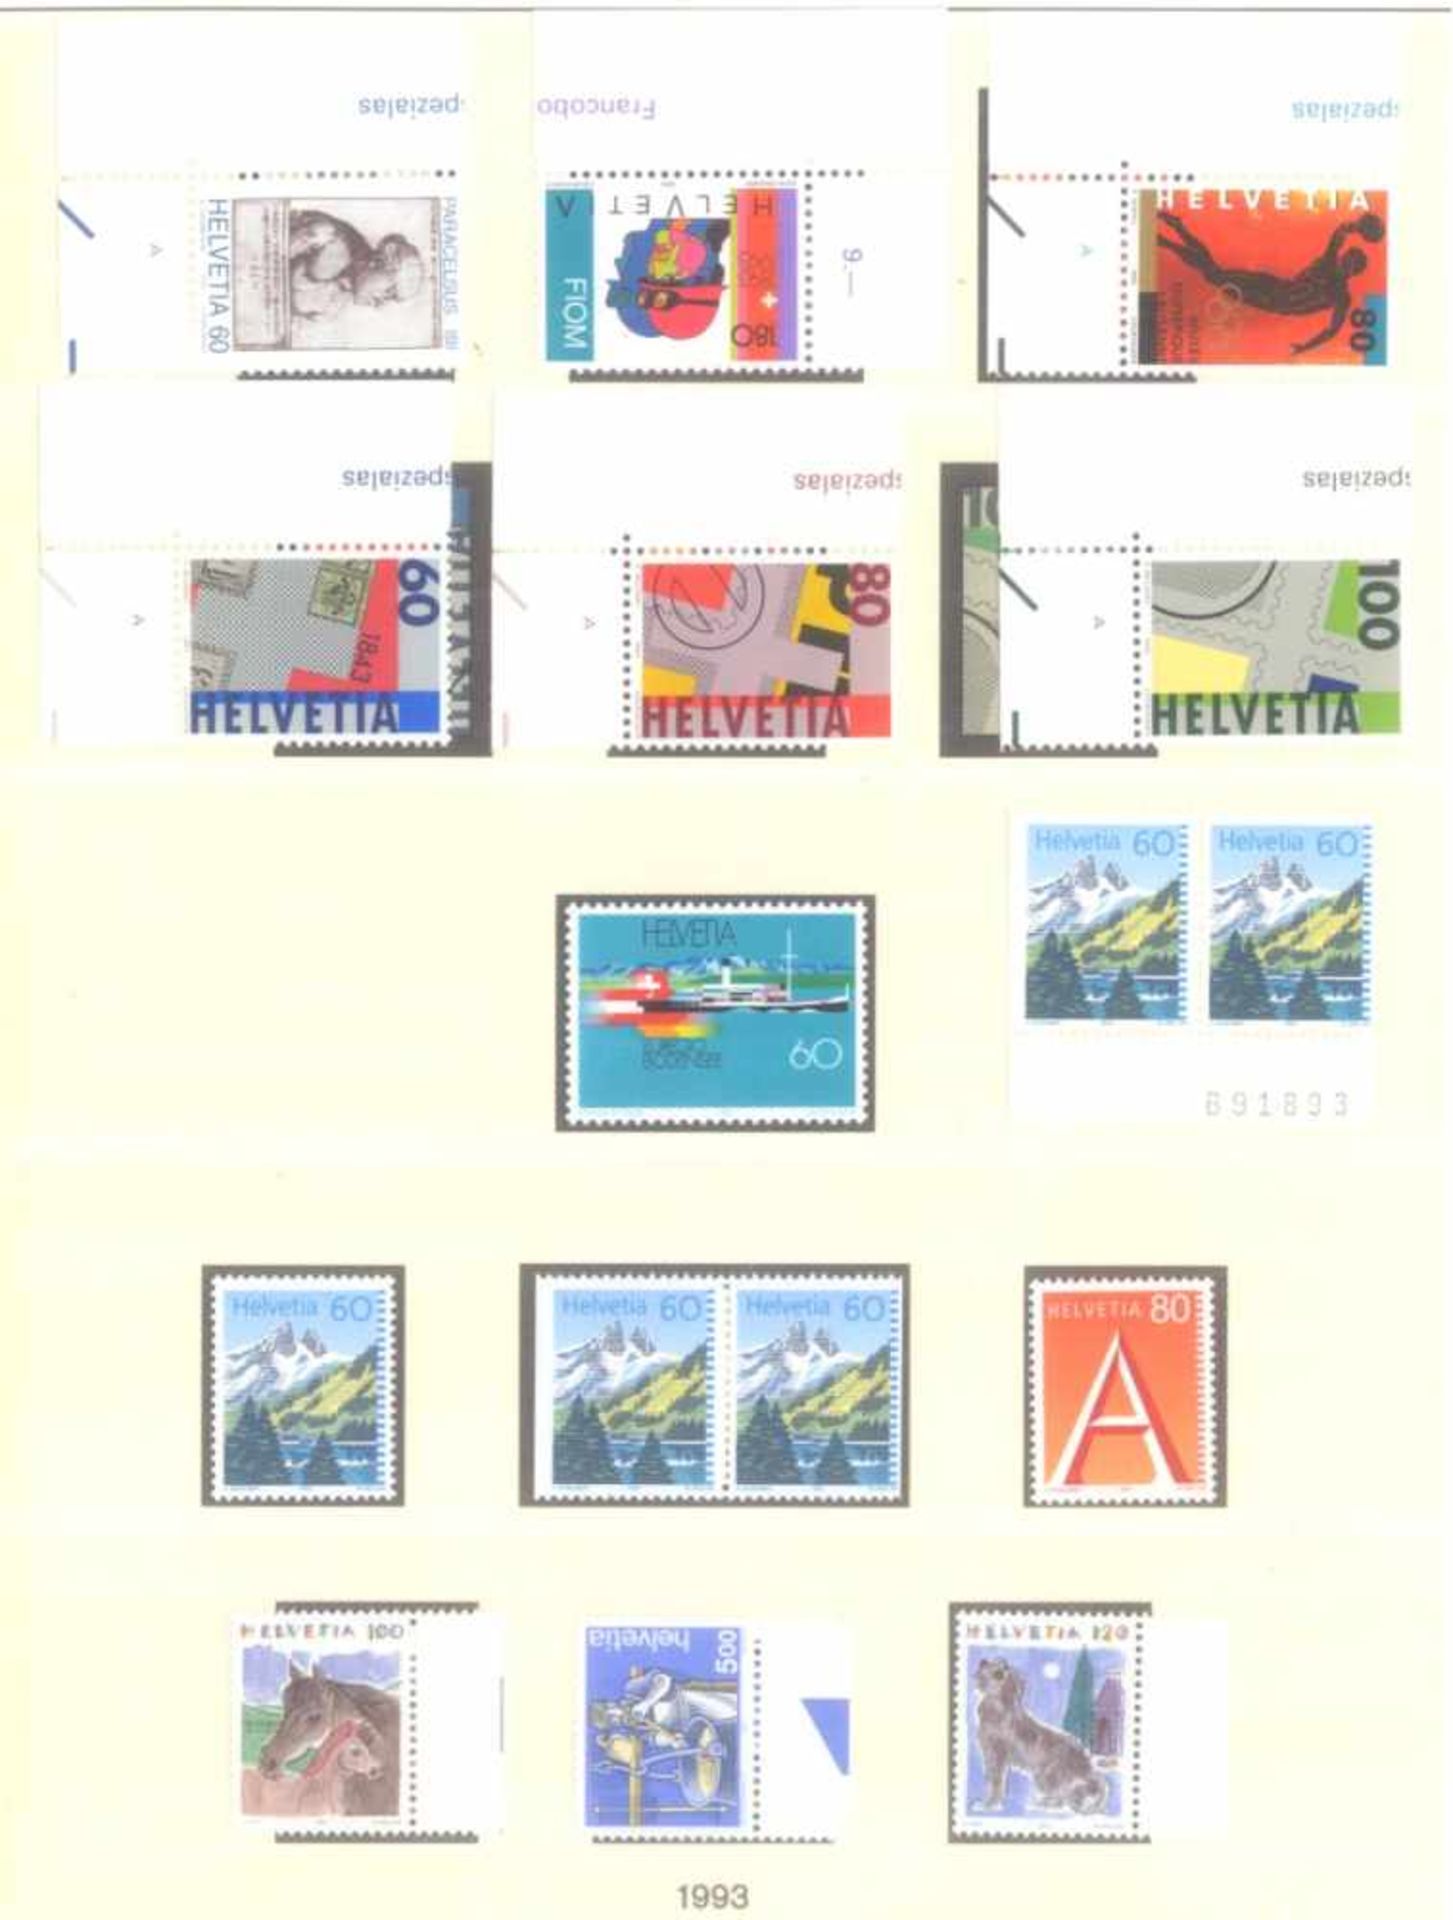 SCHWEIZ 1991-2003; mit 416,- SCHWEIZER FRANKEN NOMINALE!postfrische, komplette Sammlung - nach den - Bild 2 aus 8